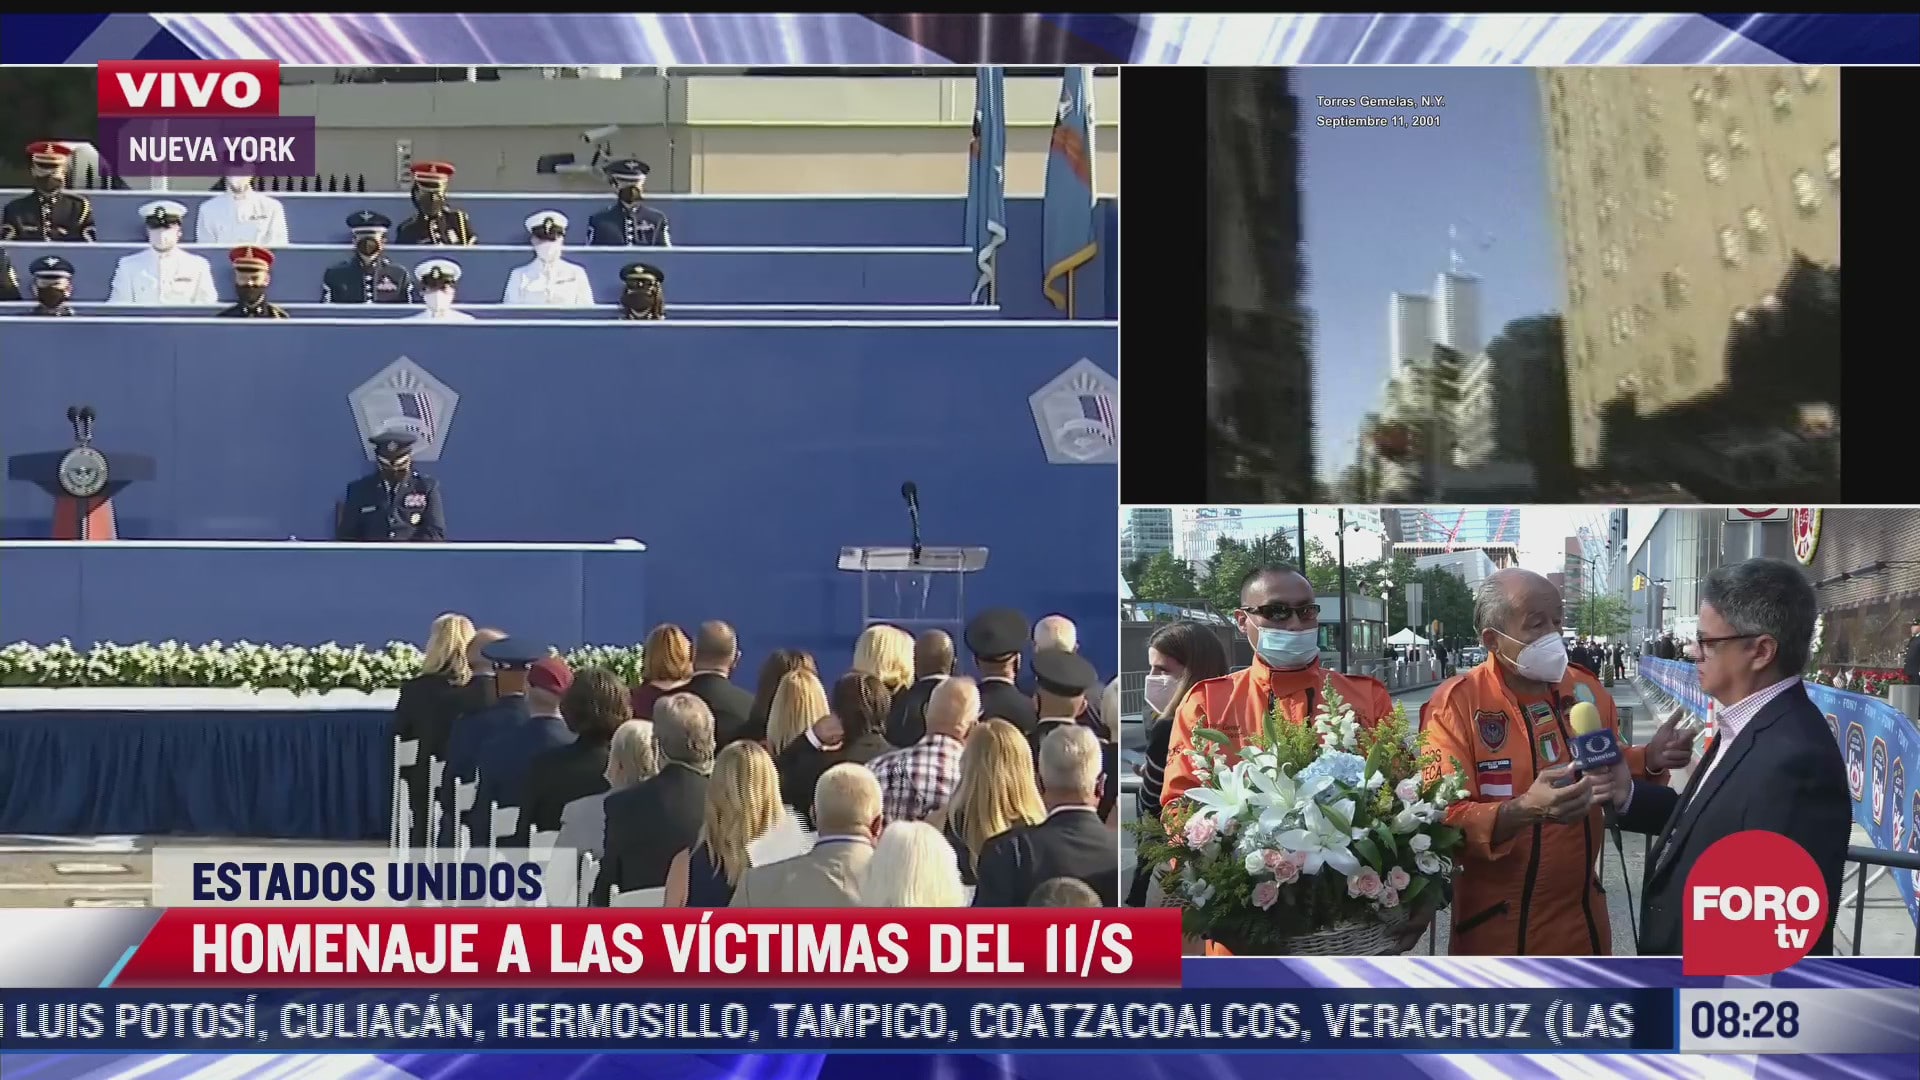 topos mexicanos relatan como veian los cuerpos entre los escombros el 11 s